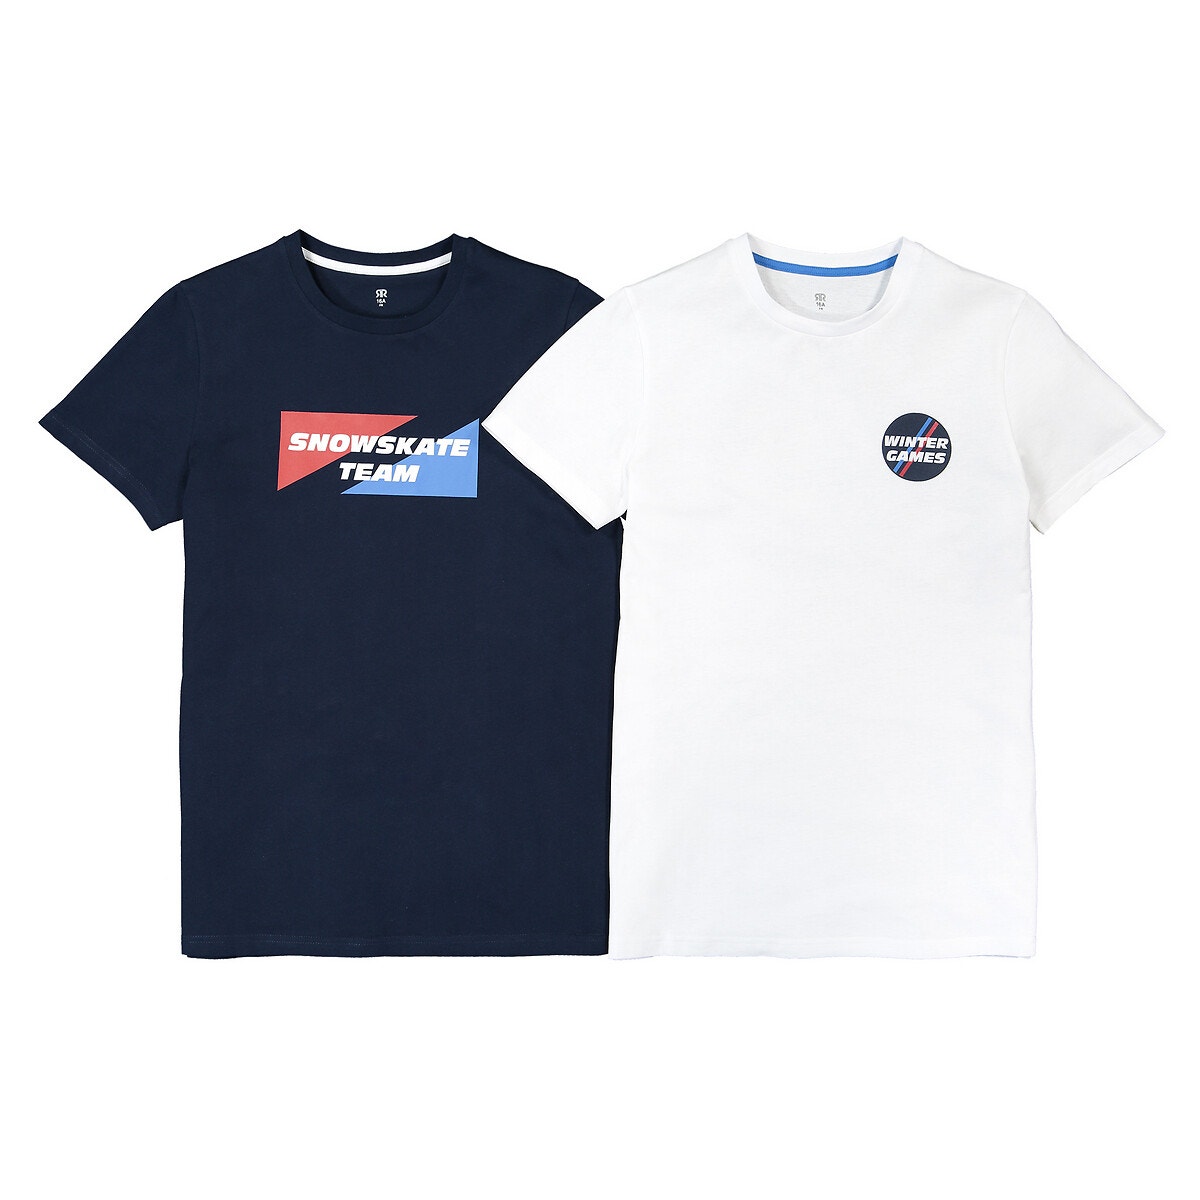 ΠΑΙΔΙ | Μπλούζες & Πουκάμισα | T-shirts Σετ 2 T-shirt, 10-18 ετών